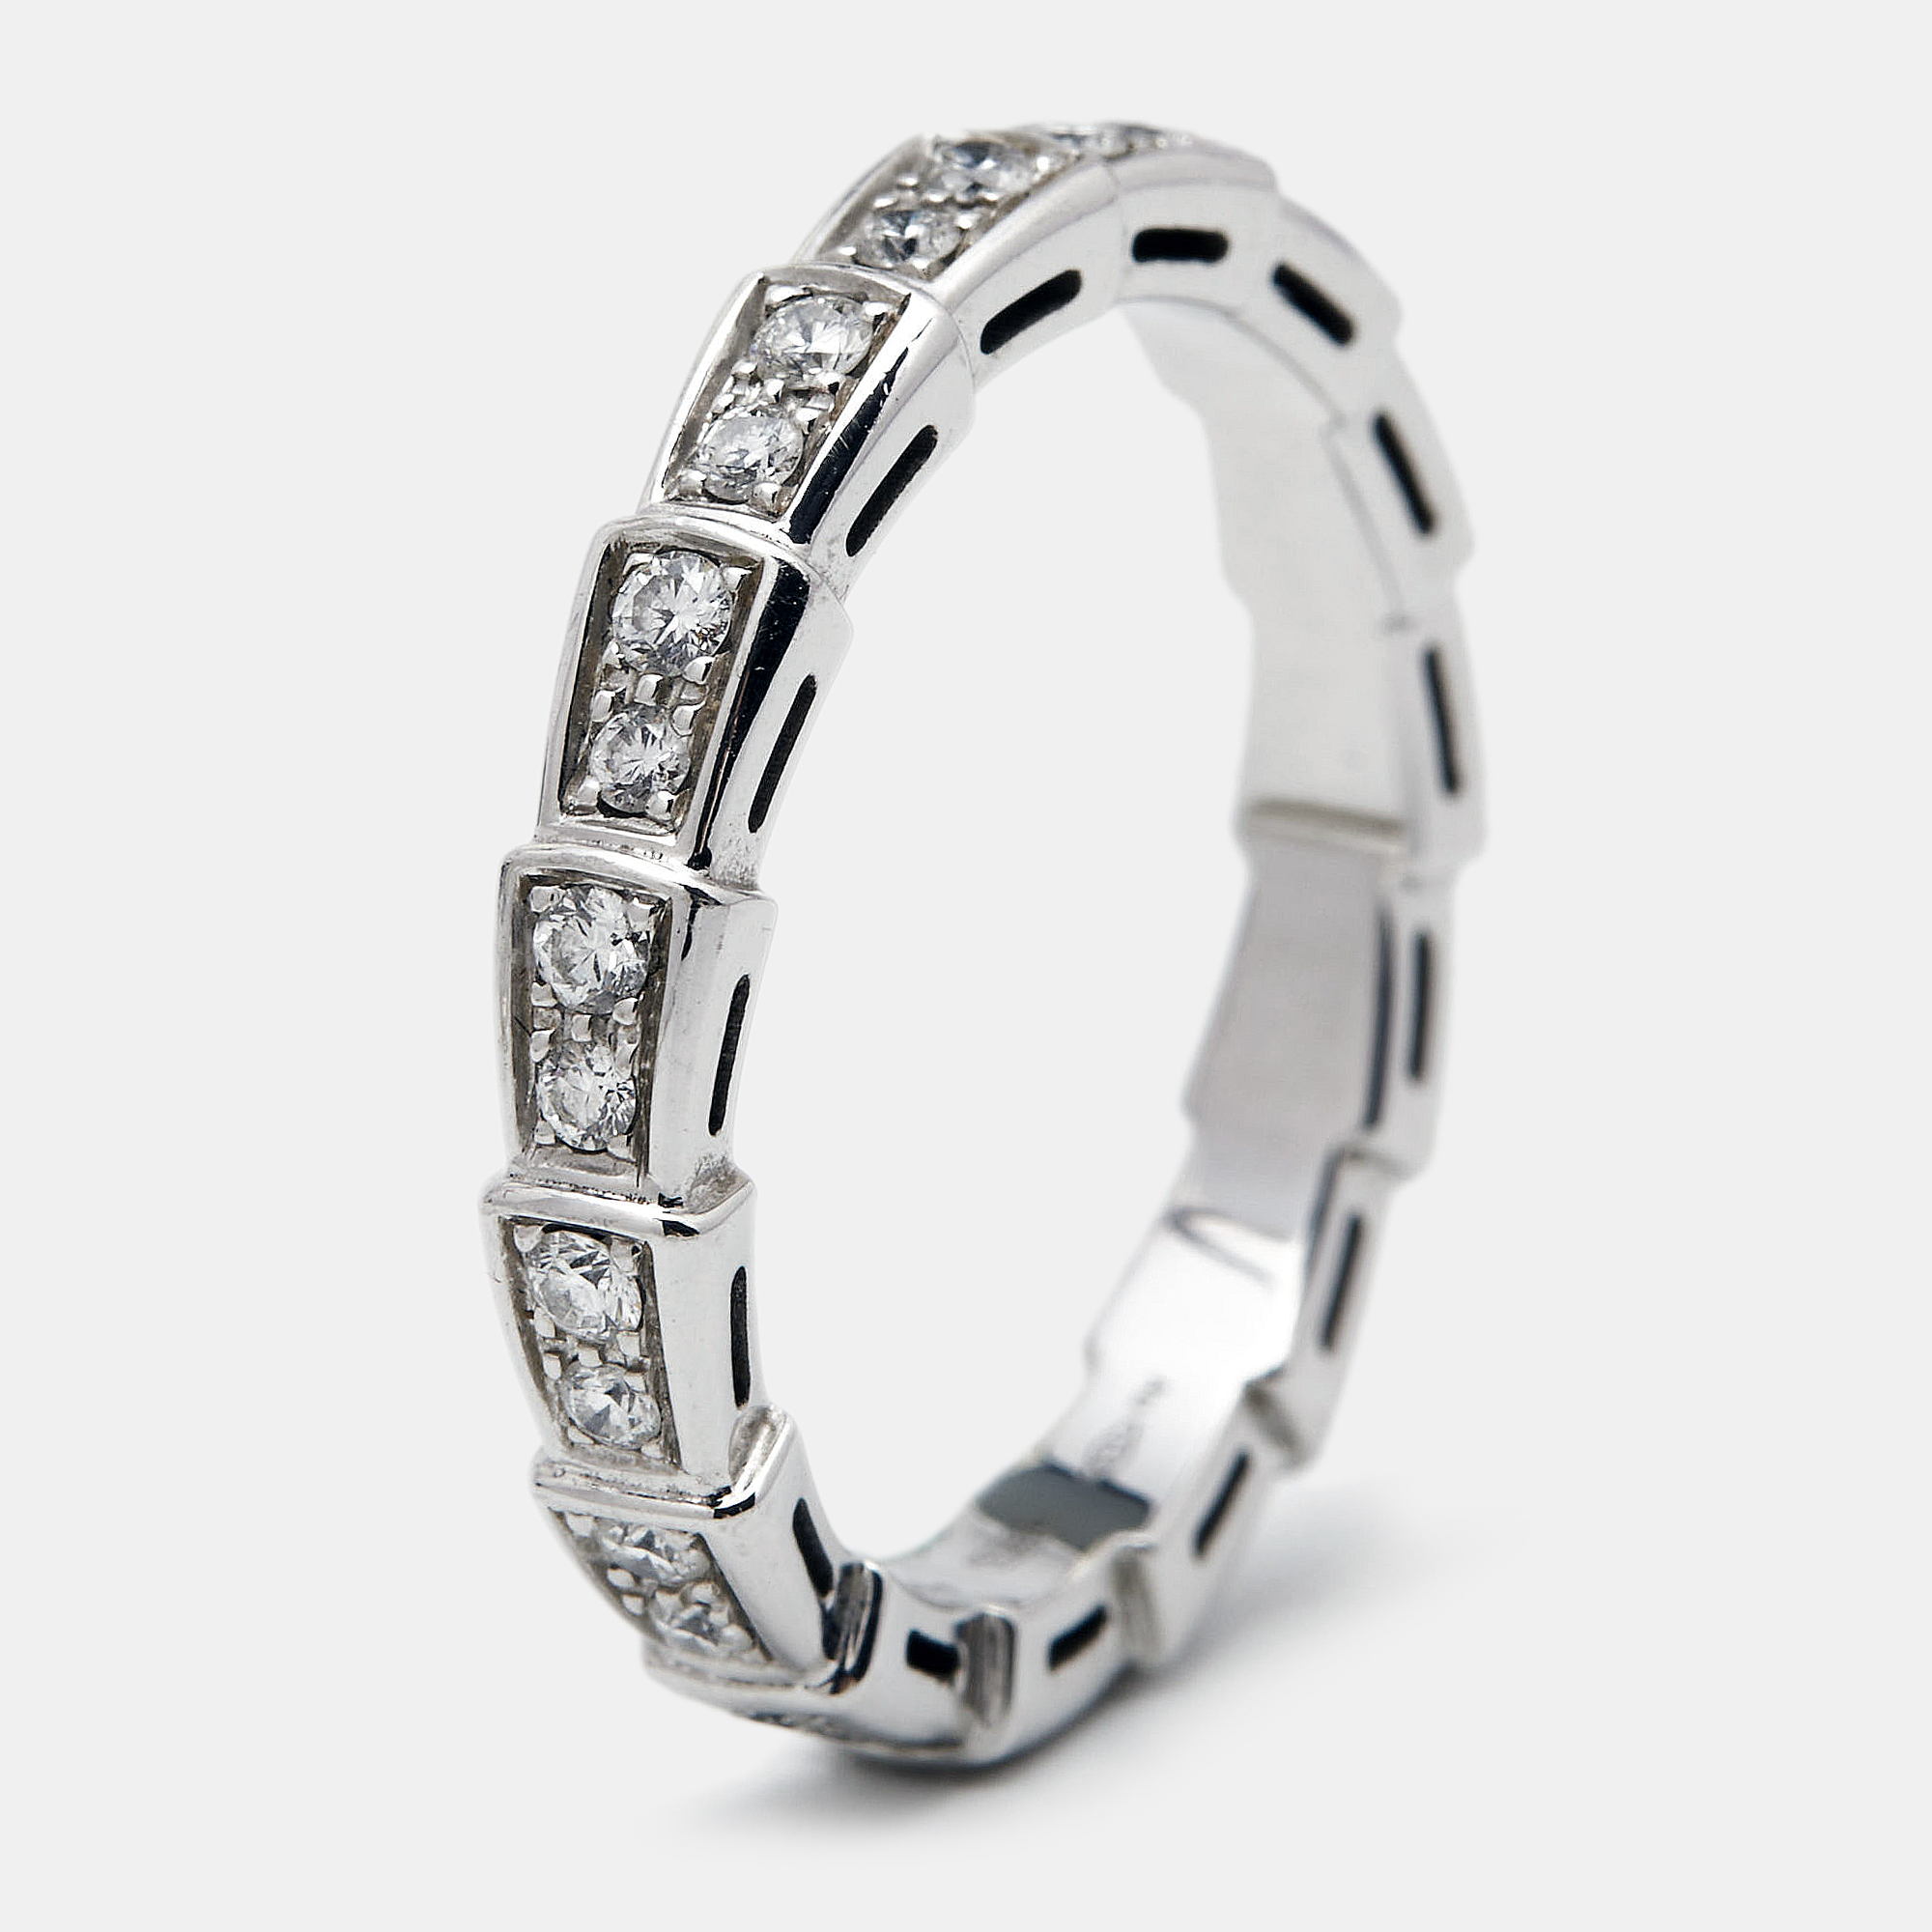 Bvlgari Serpenti Viper Diamonds 18k White Gold Ring Size 57